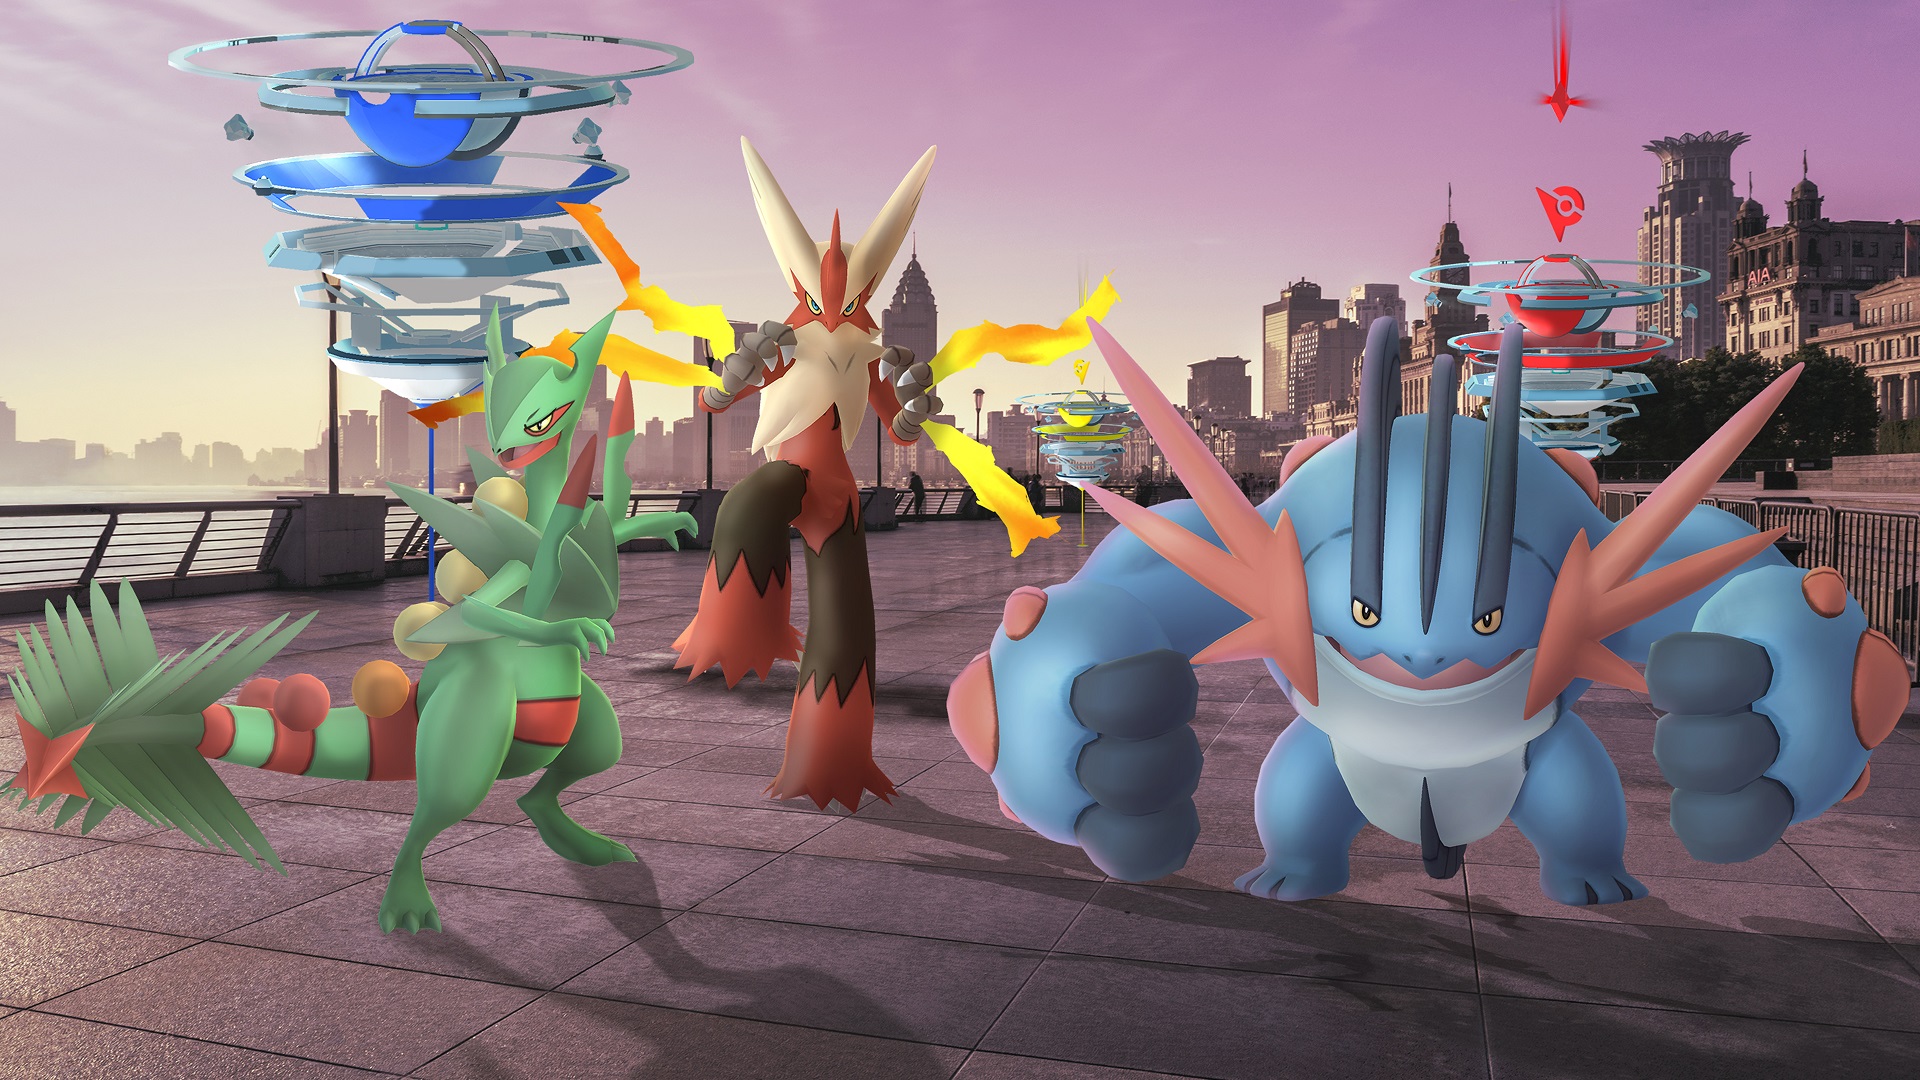 Pokemon Go': Reshiram, Zekrom and Kyurem coming to five-star raids